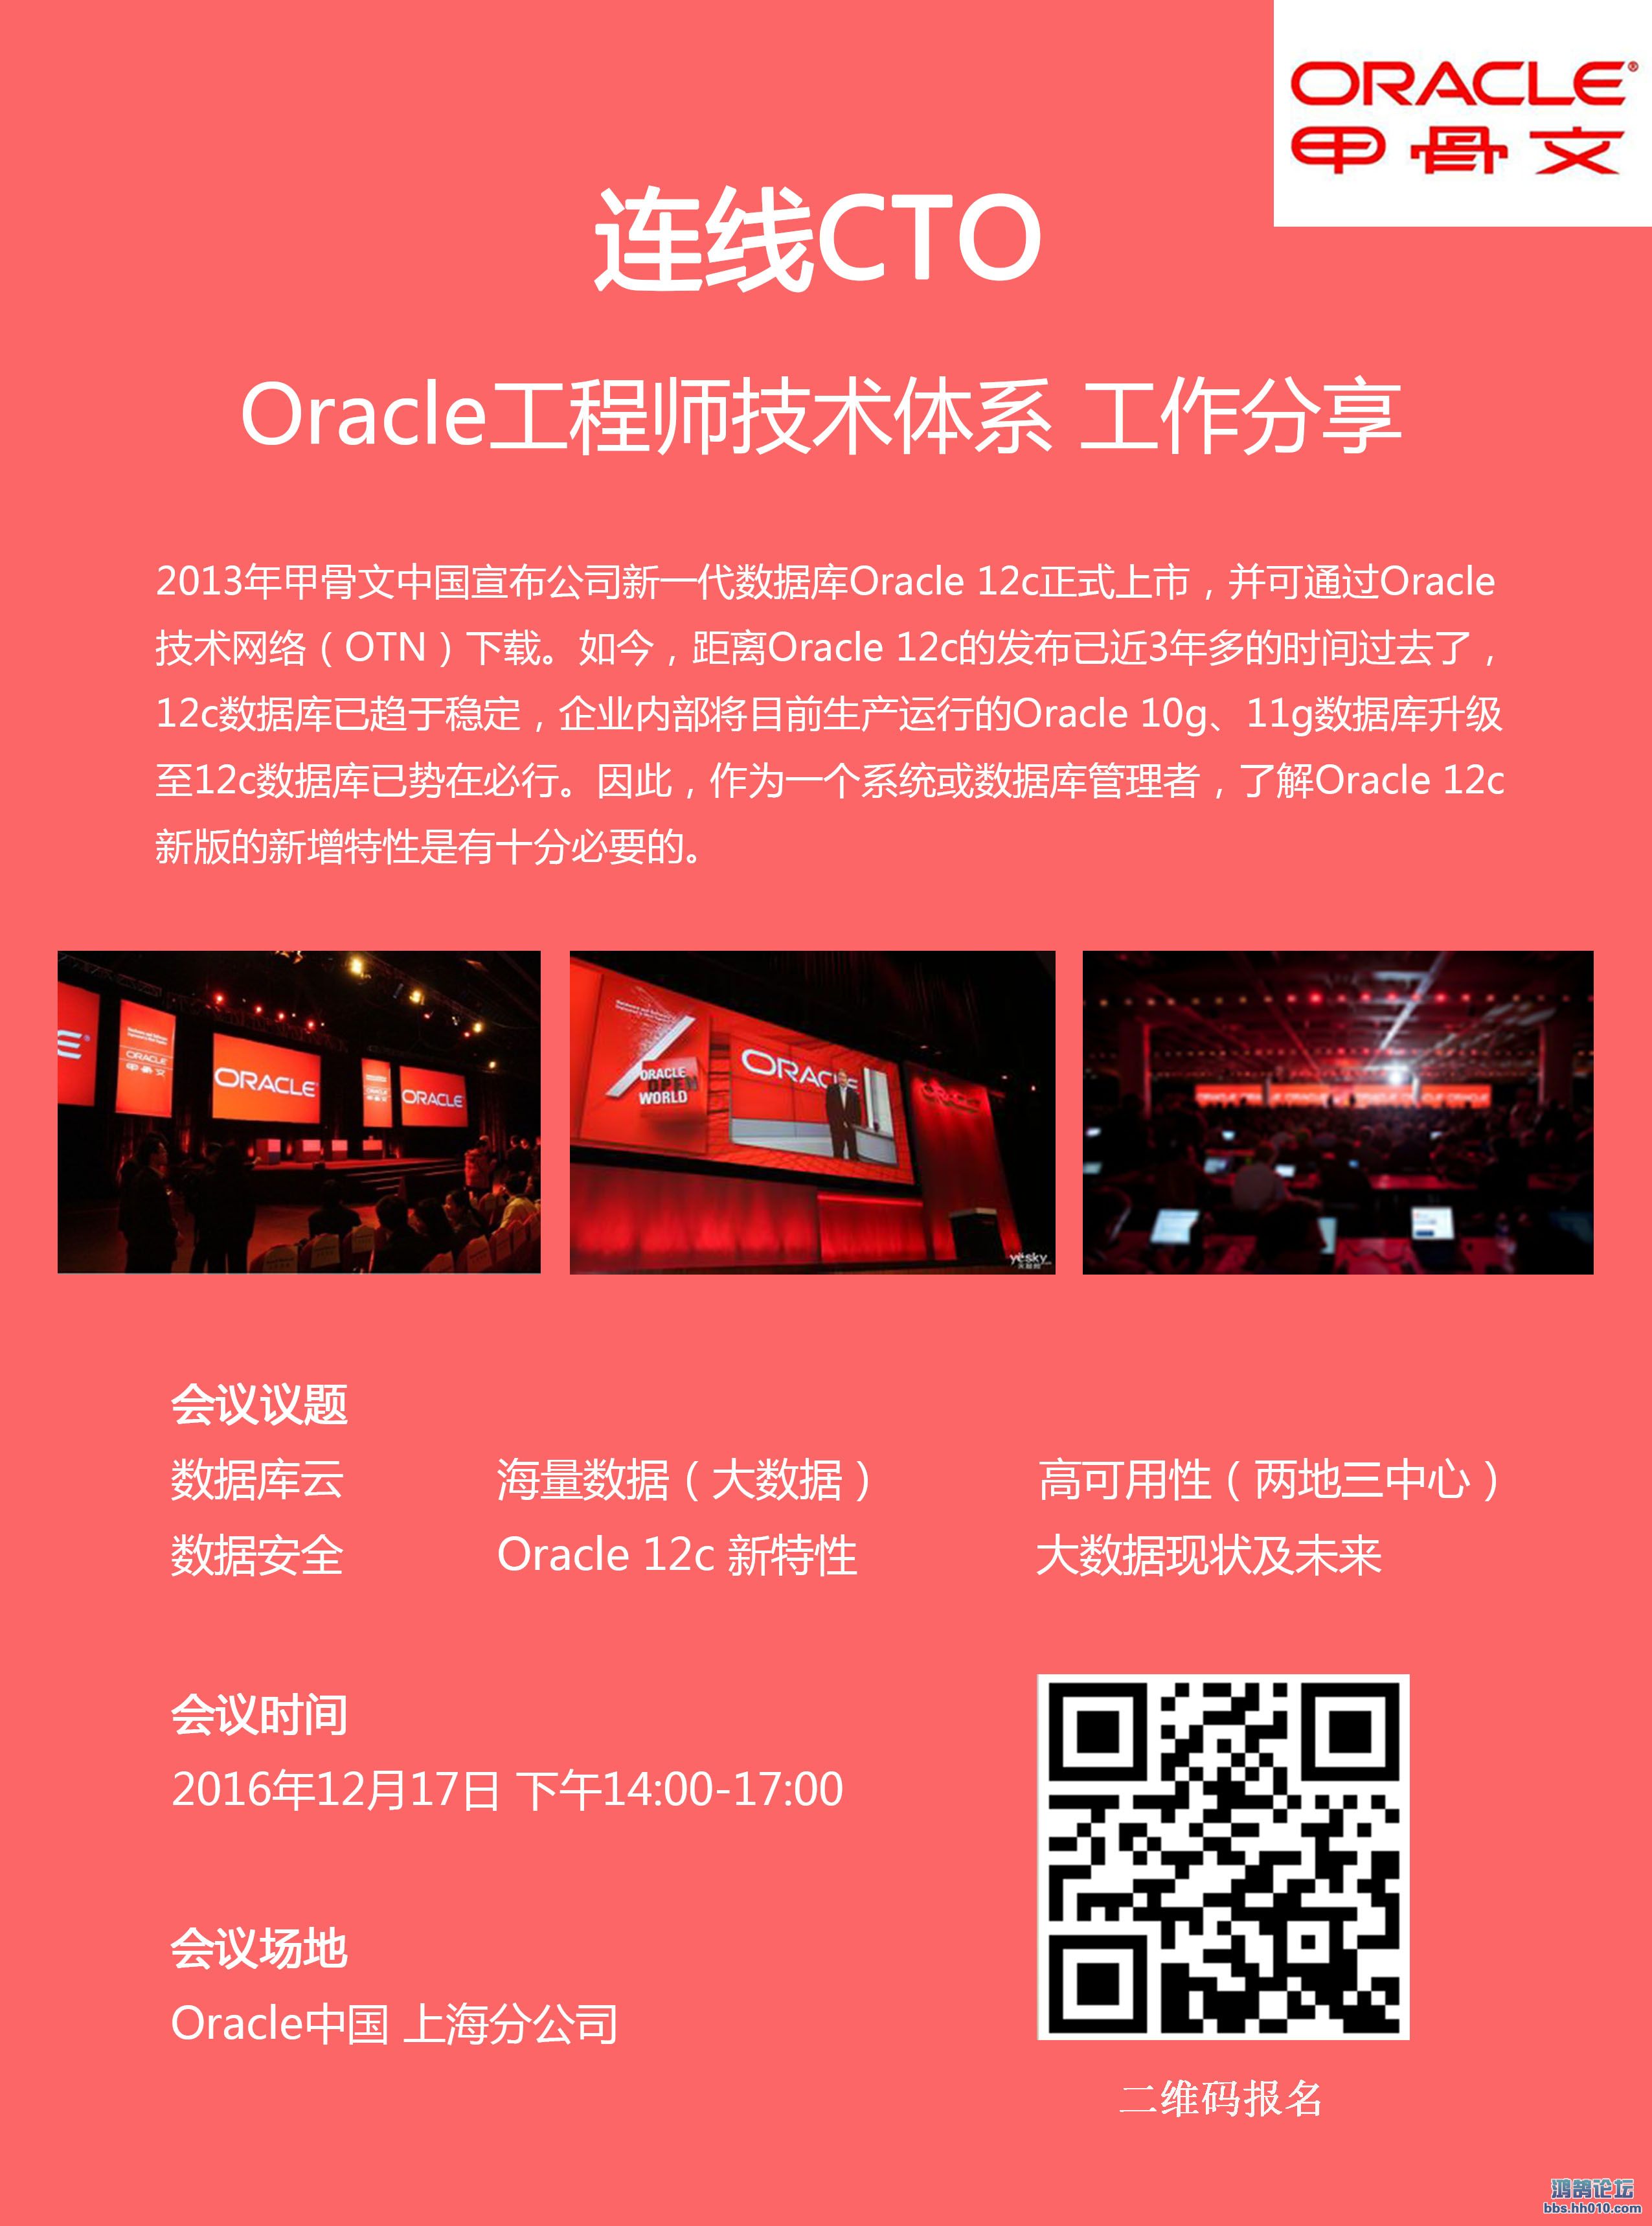 Oracle.jpg